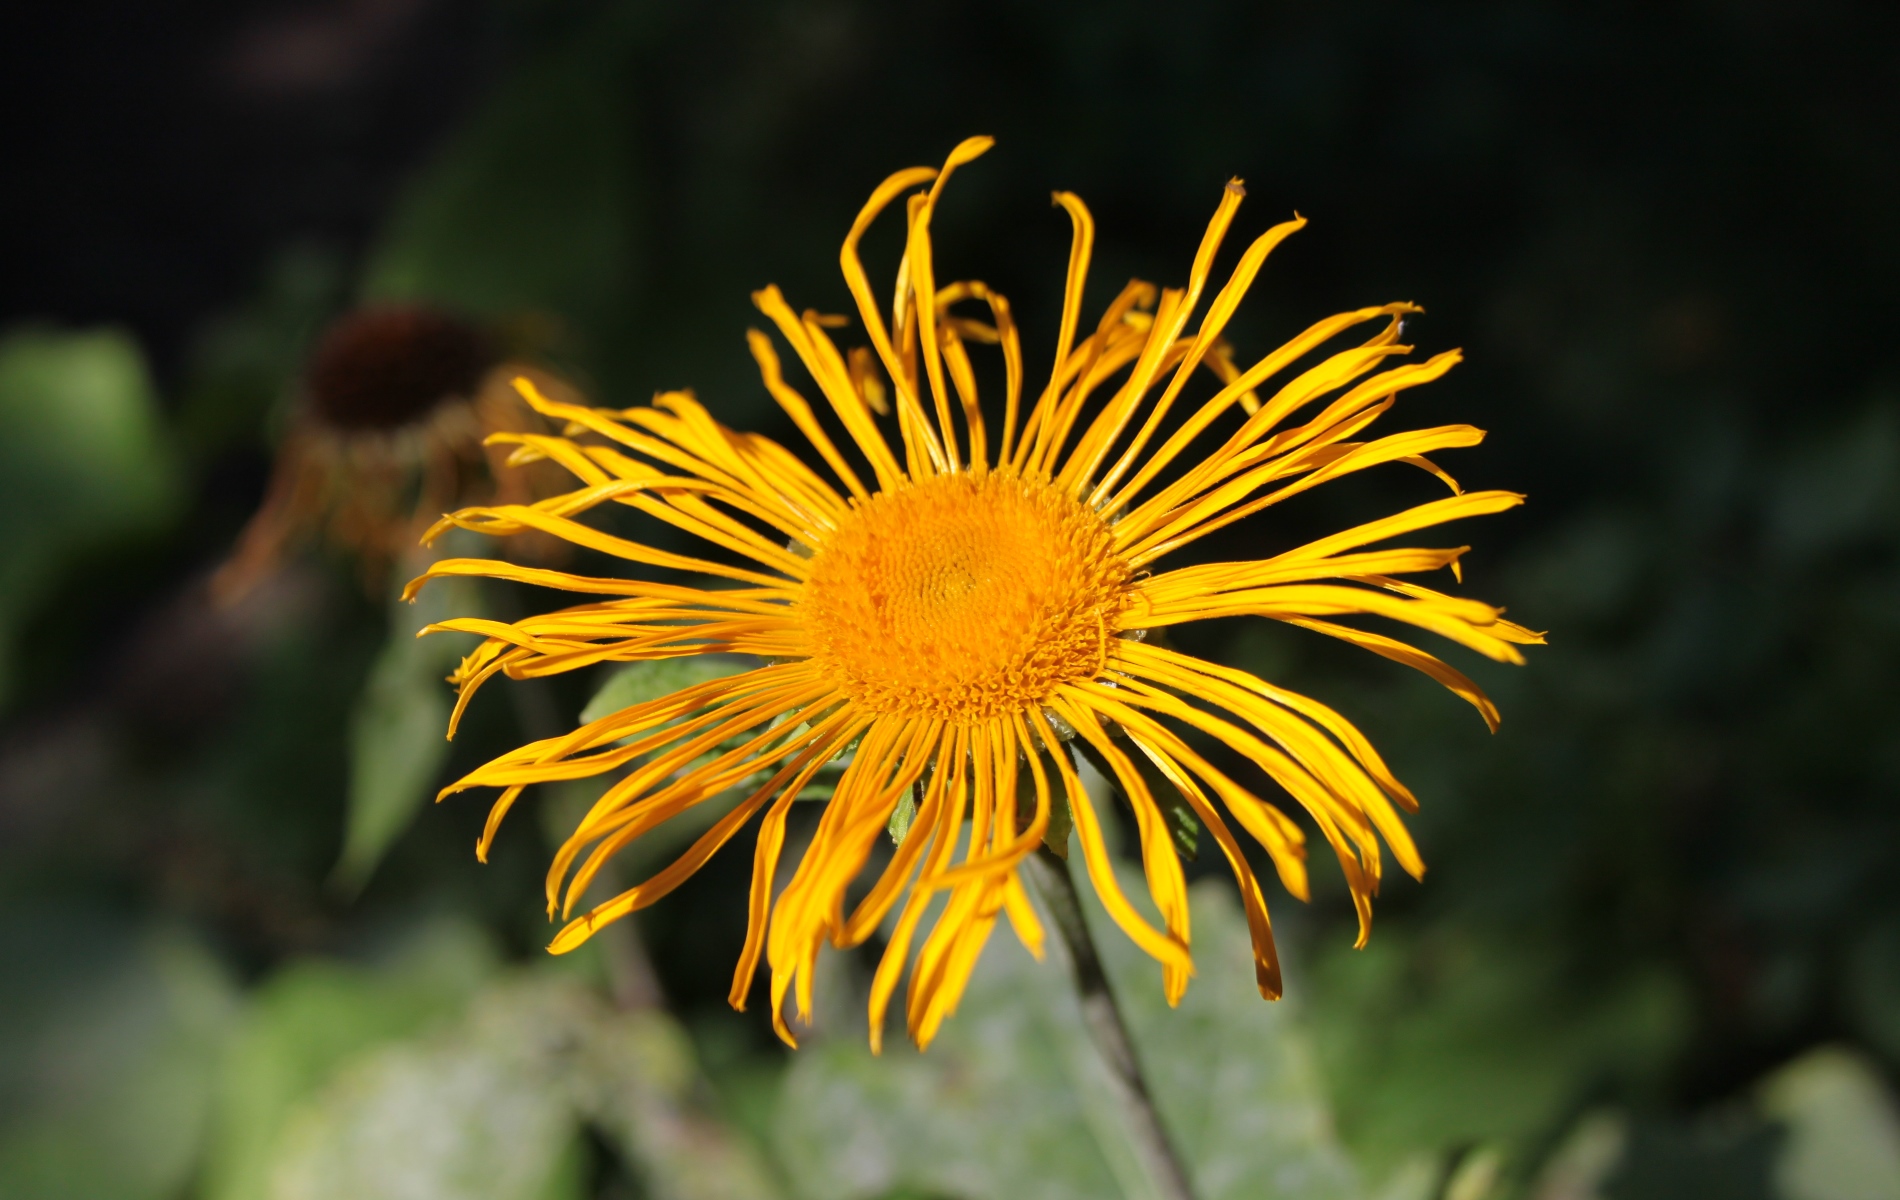 Echter Alant - Eine Blüte von oben mit langen, dünnen Blütenblättern. In der Mitte sind die gelben Staubblätter. Der Hintergrund des Bildes ist dunkelgrün und schwarz gefärbt und unscharf fotografiert.